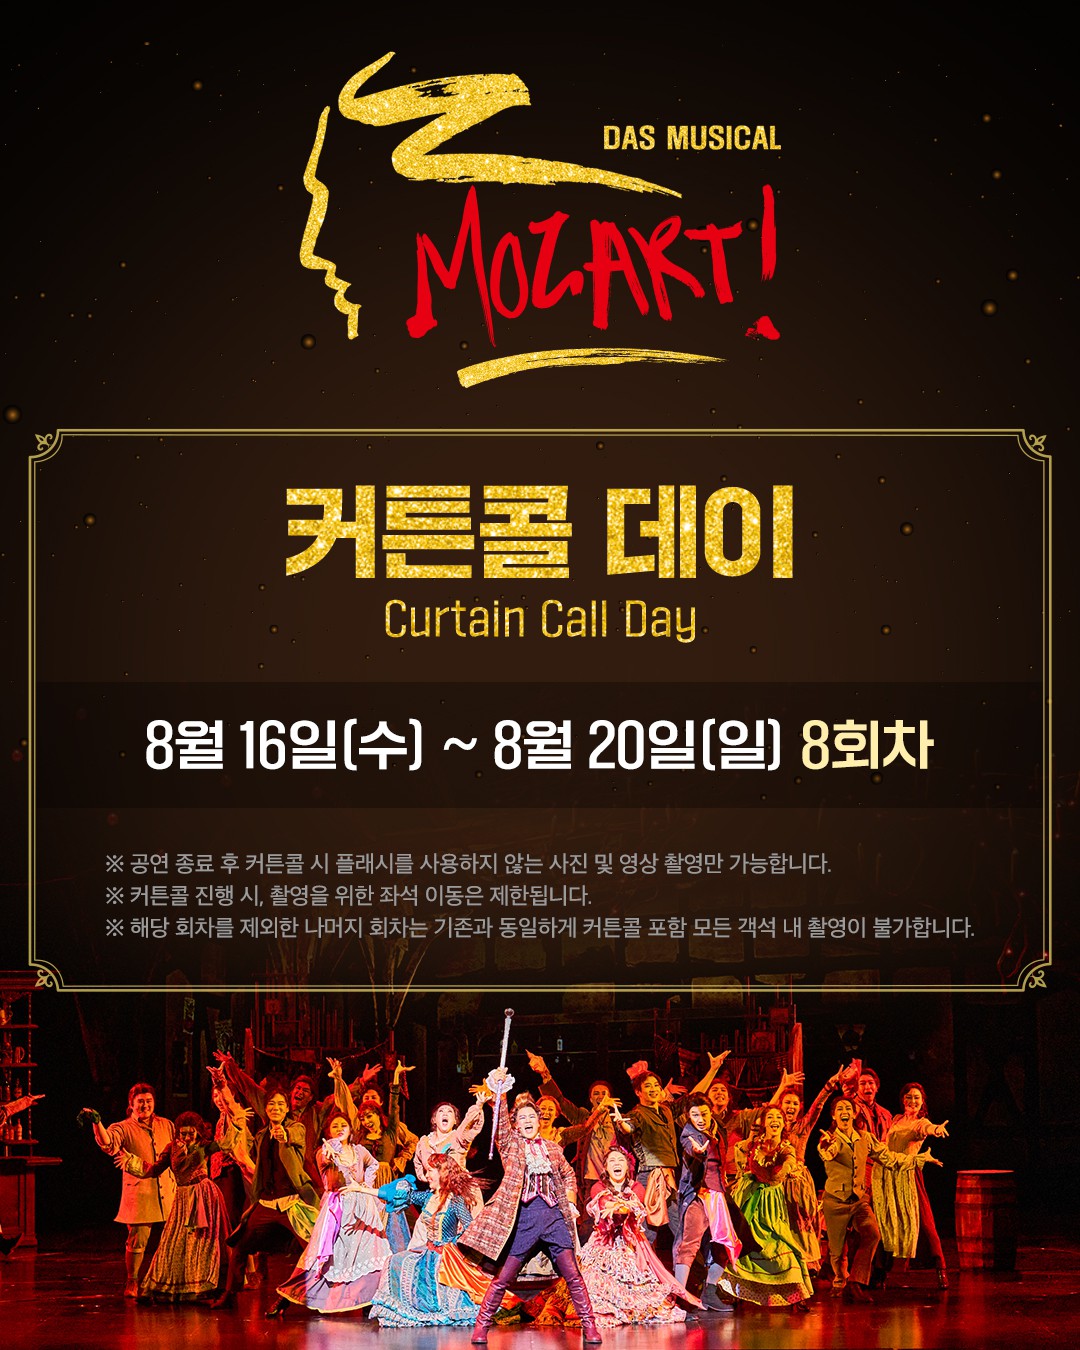 뮤지컬 '모차르트!' 마지막 티켓 오픈 예매율 1위...8월 16일부터 '커튼콜 데이' 개최